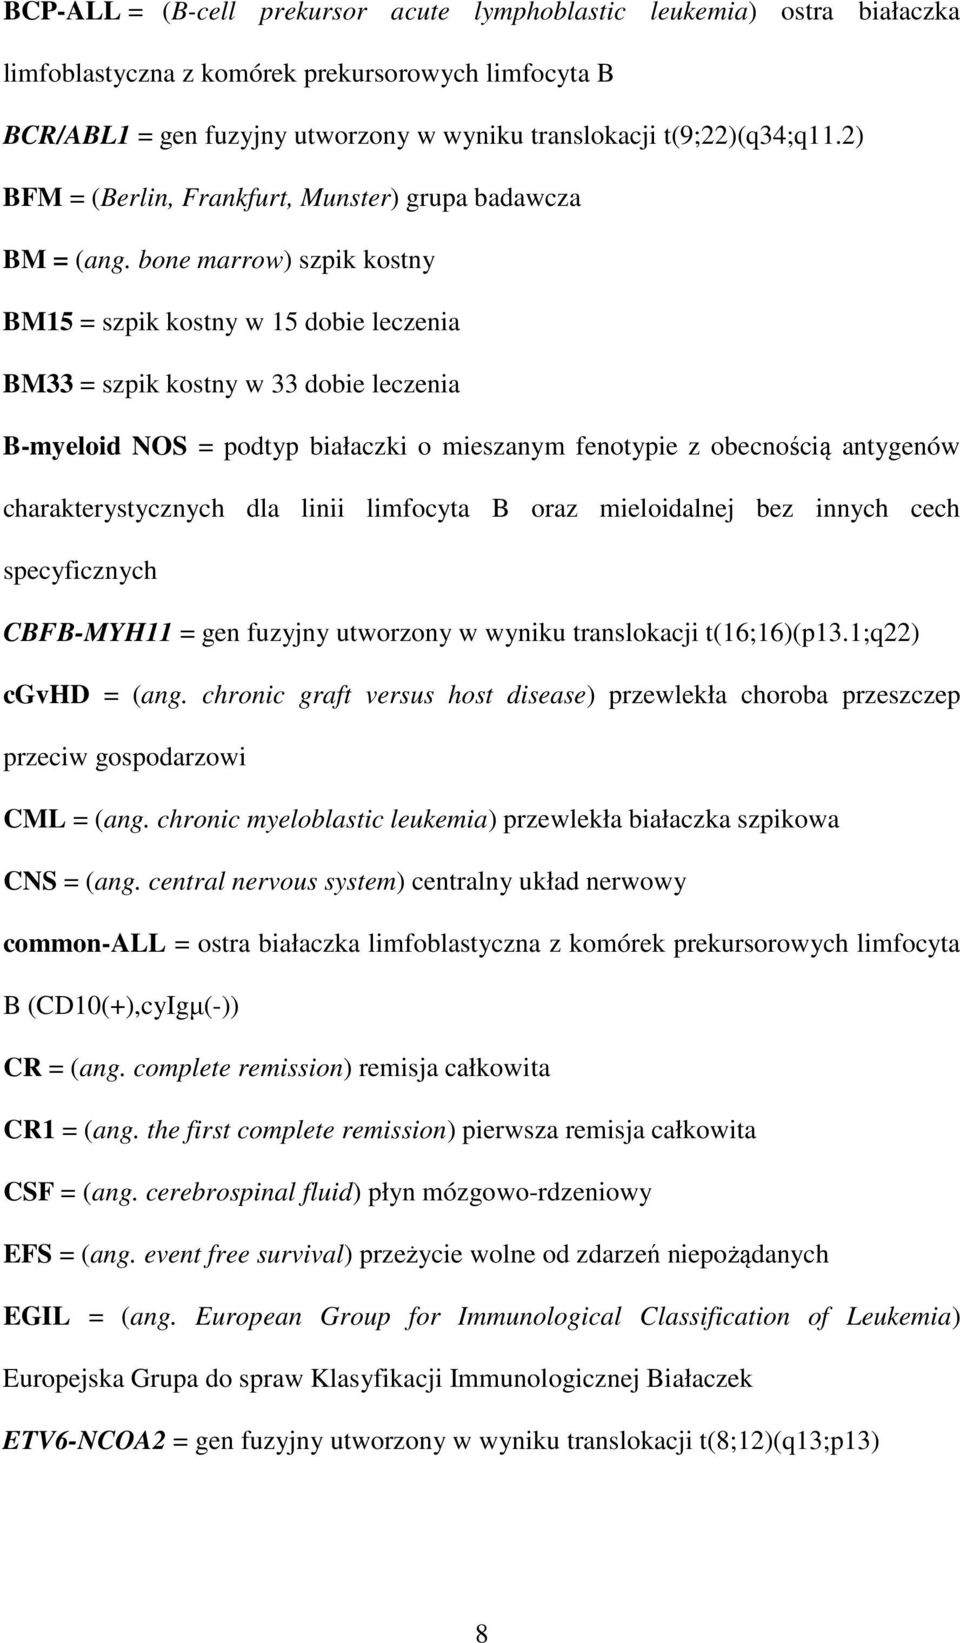 bone marrow) szpik kostny BM15 = szpik kostny w 15 dobie leczenia BM33 = szpik kostny w 33 dobie leczenia B-myeloid NOS = podtyp białaczki o mieszanym fenotypie z obecnością antygenów